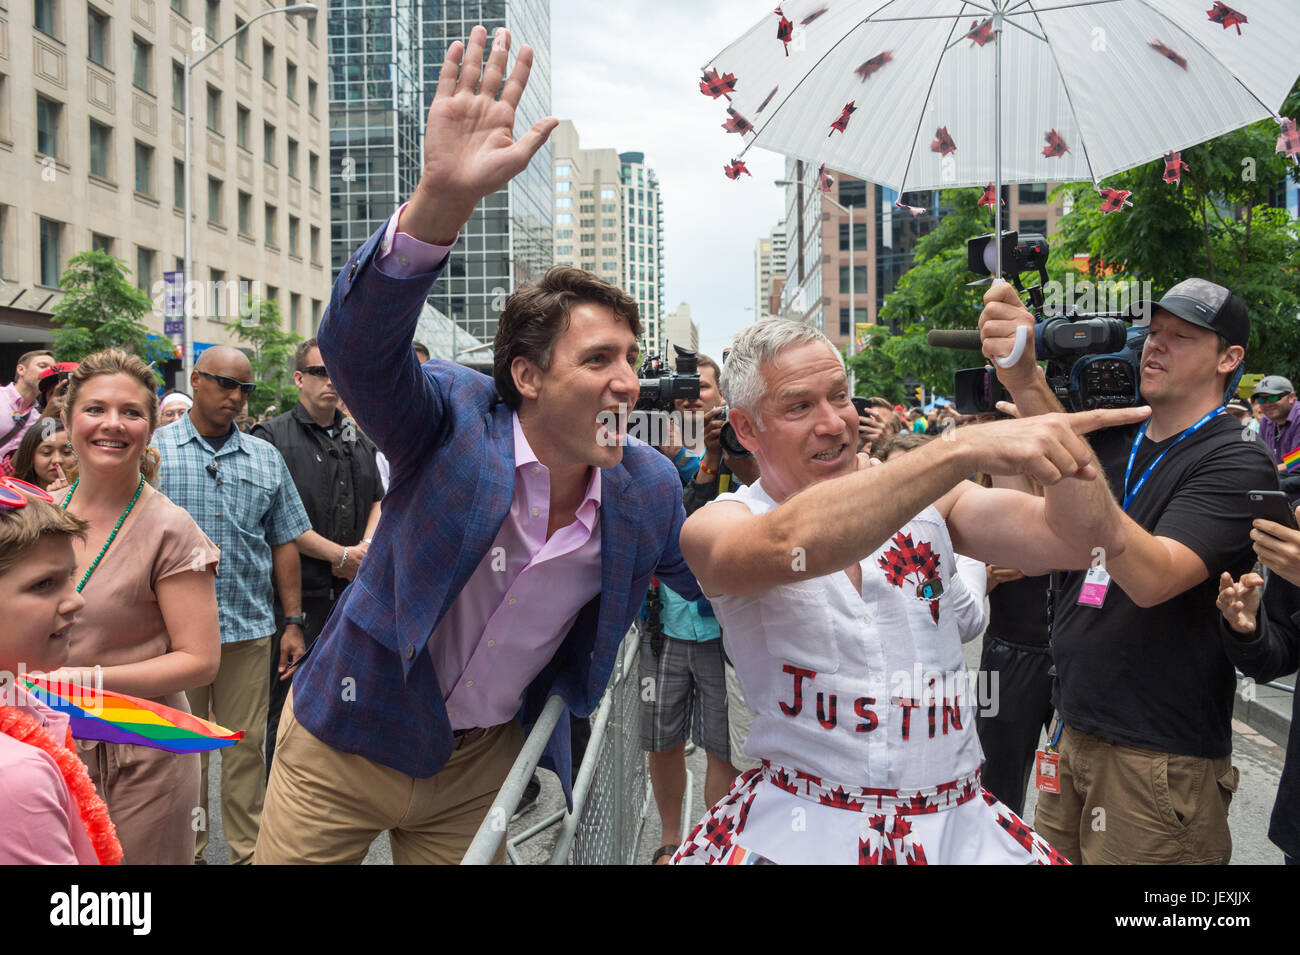 Toronto, Canada. 25 juin 2017. Le premier ministre du Canada, Justin Trudeau avec ventilateur Jamie Godin qui fait une 'Justin' Parade Gay au cours de tenue. Banque D'Images